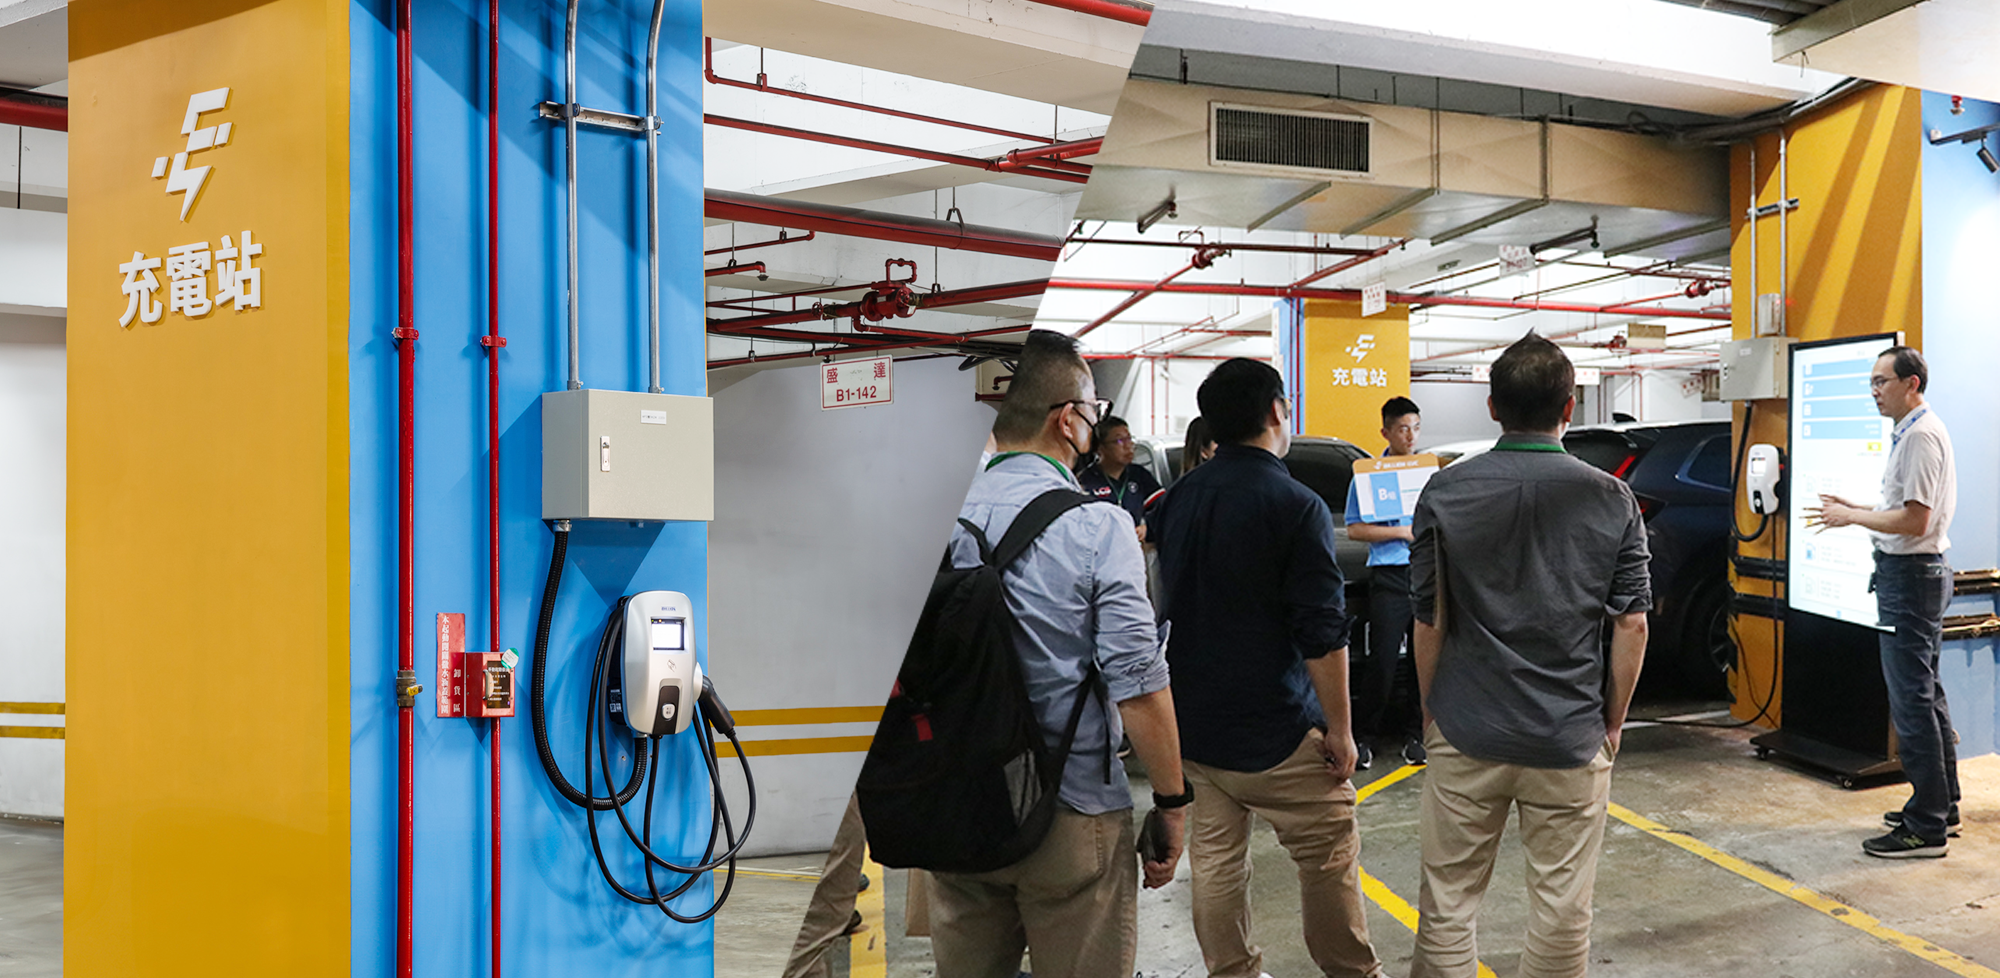 盛達電動車充電站試營運 建商聚焦社區光充儲系統